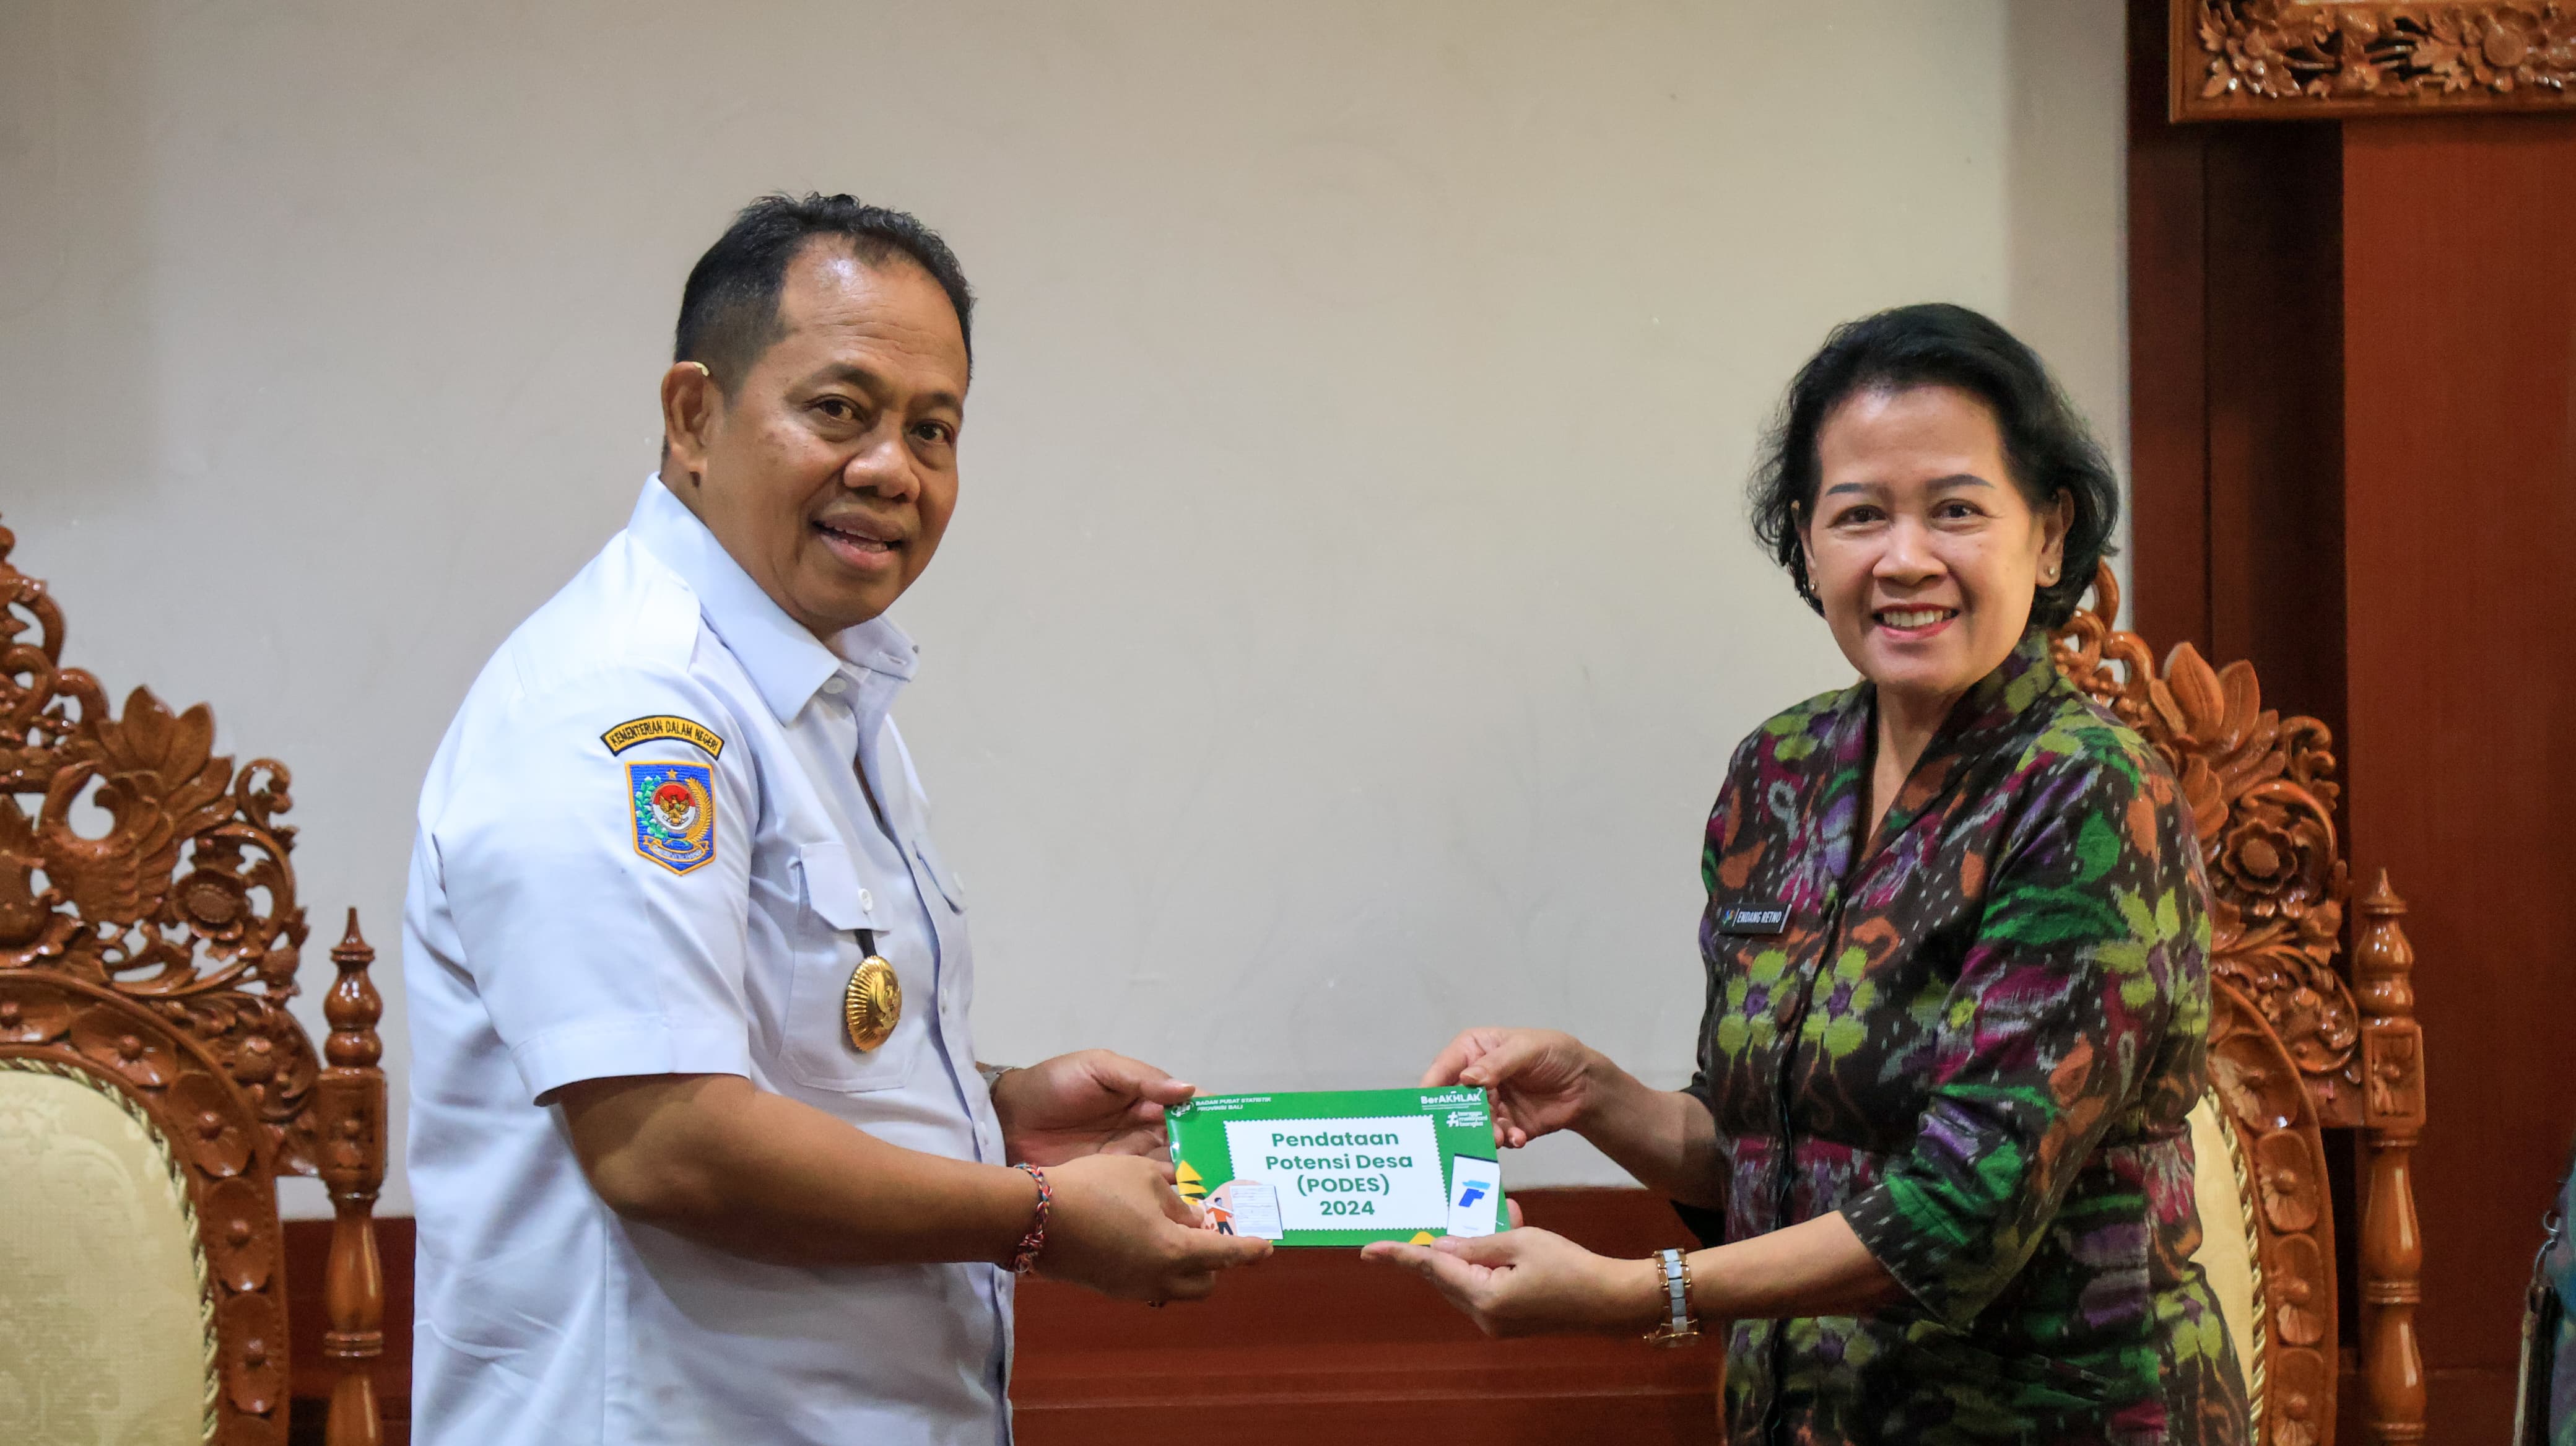 Pj. Gubernur Bali Dukung BPS Laksanakan “PODES” Tahun 2024